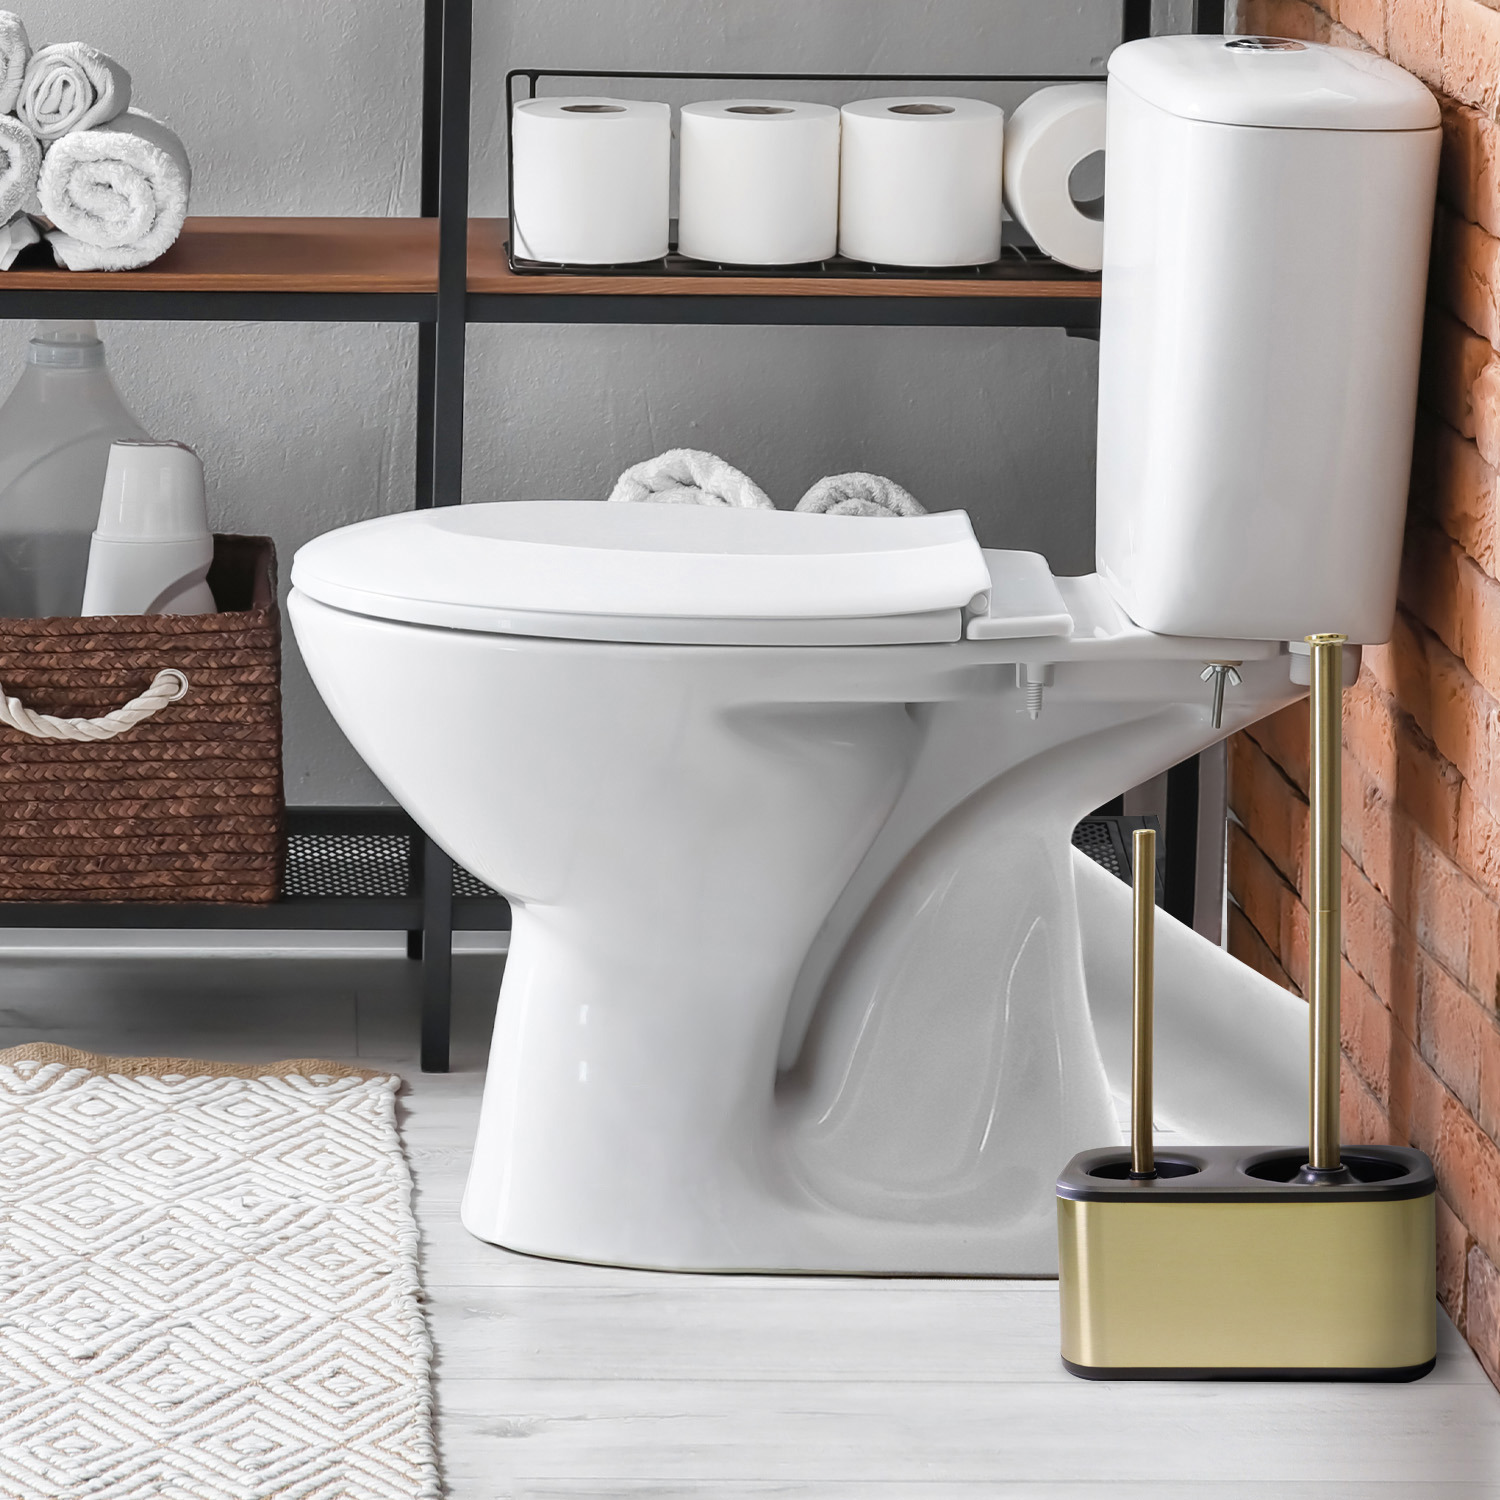 modern sleek toilet bowl brush and Toilet plunger combo - Gold